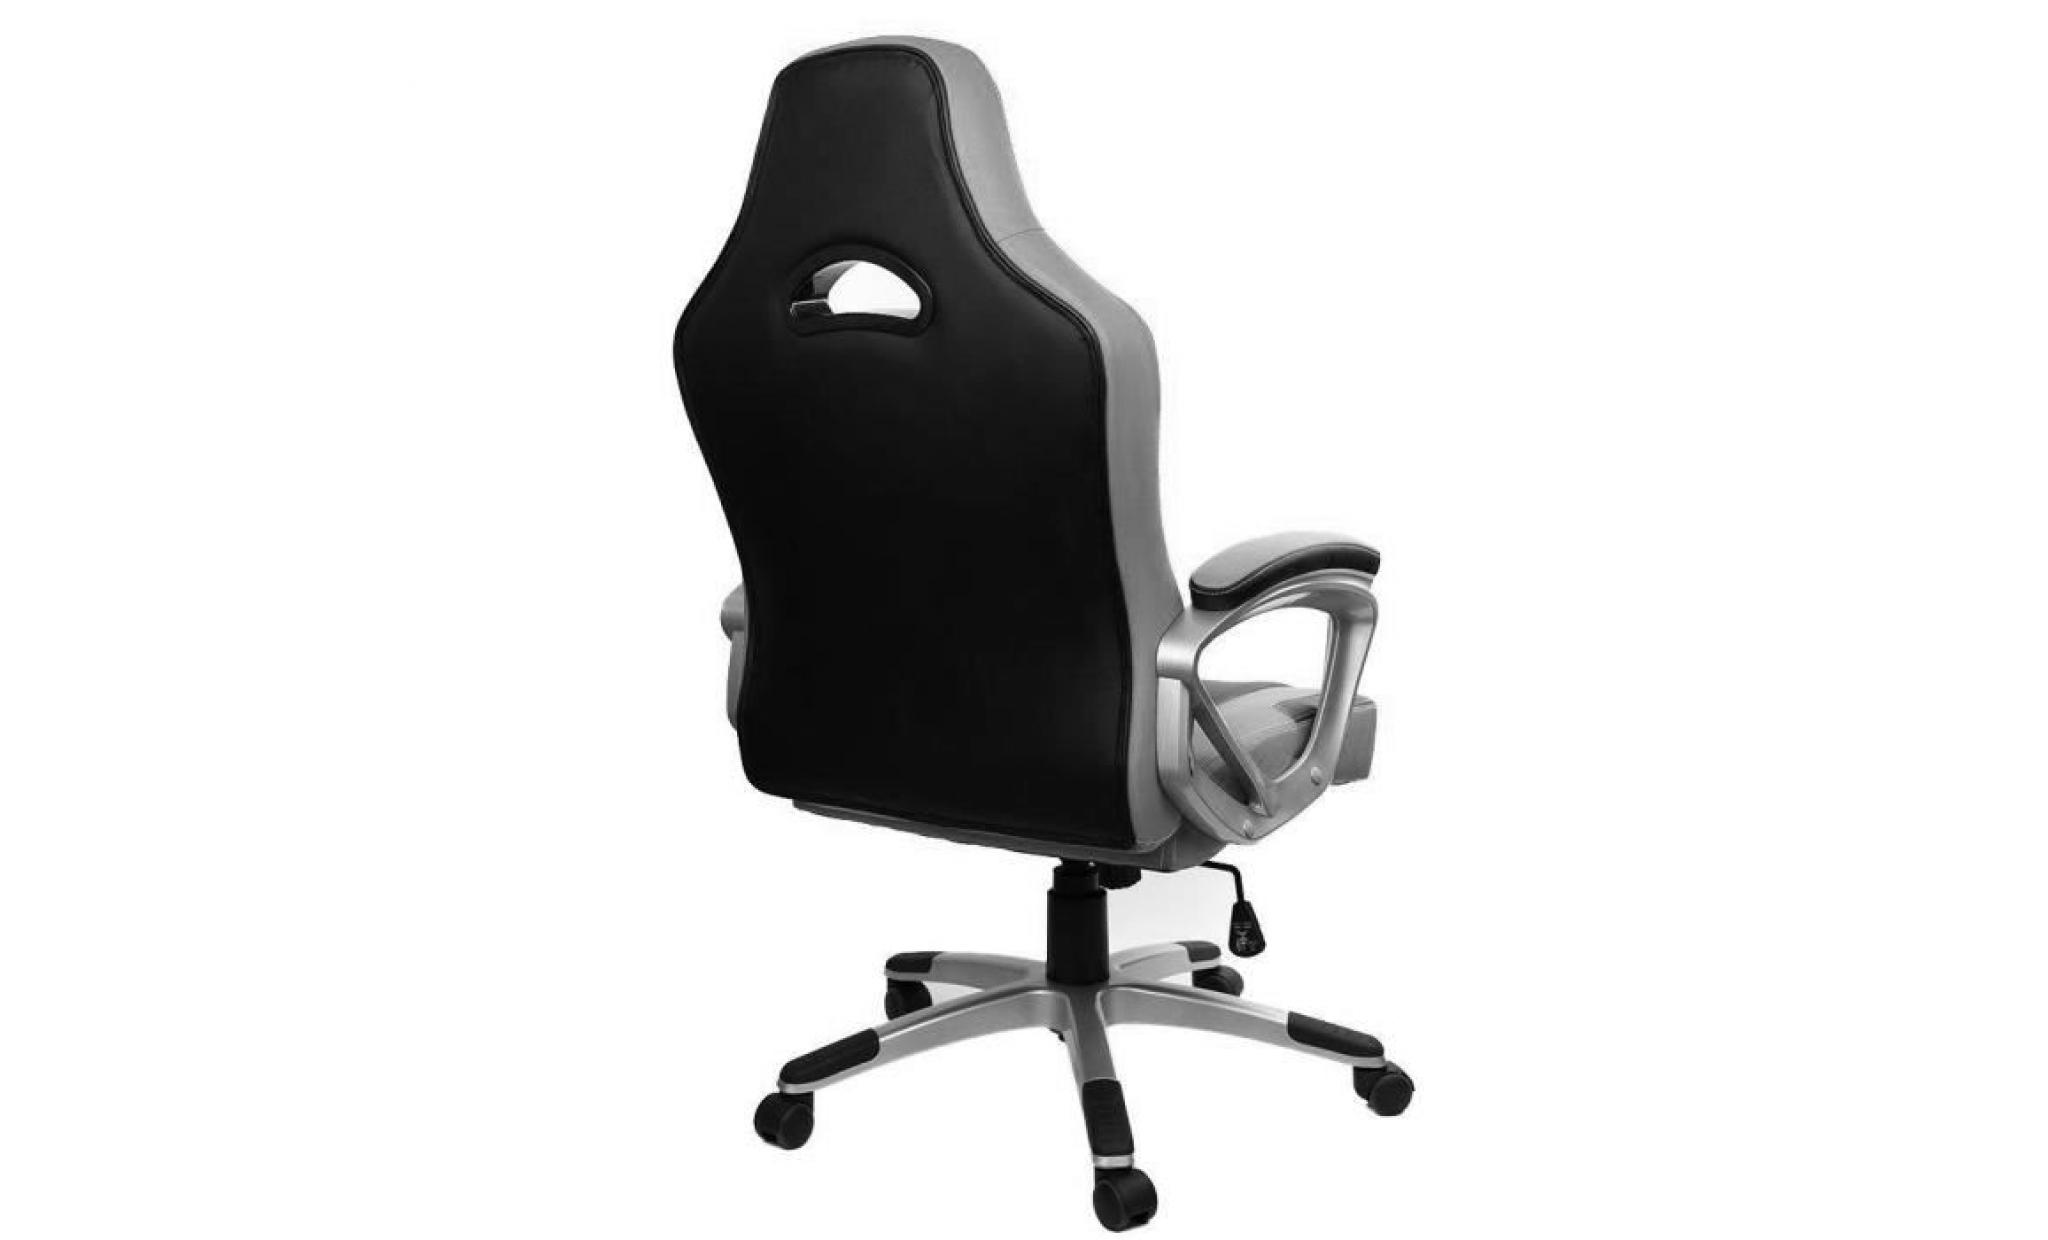 chaise gamer   racing chaise de bureau pu   gaming chaise   fauteuil de  bureau   hauteur réglable   gris / noir   intimate wm heat pas cher